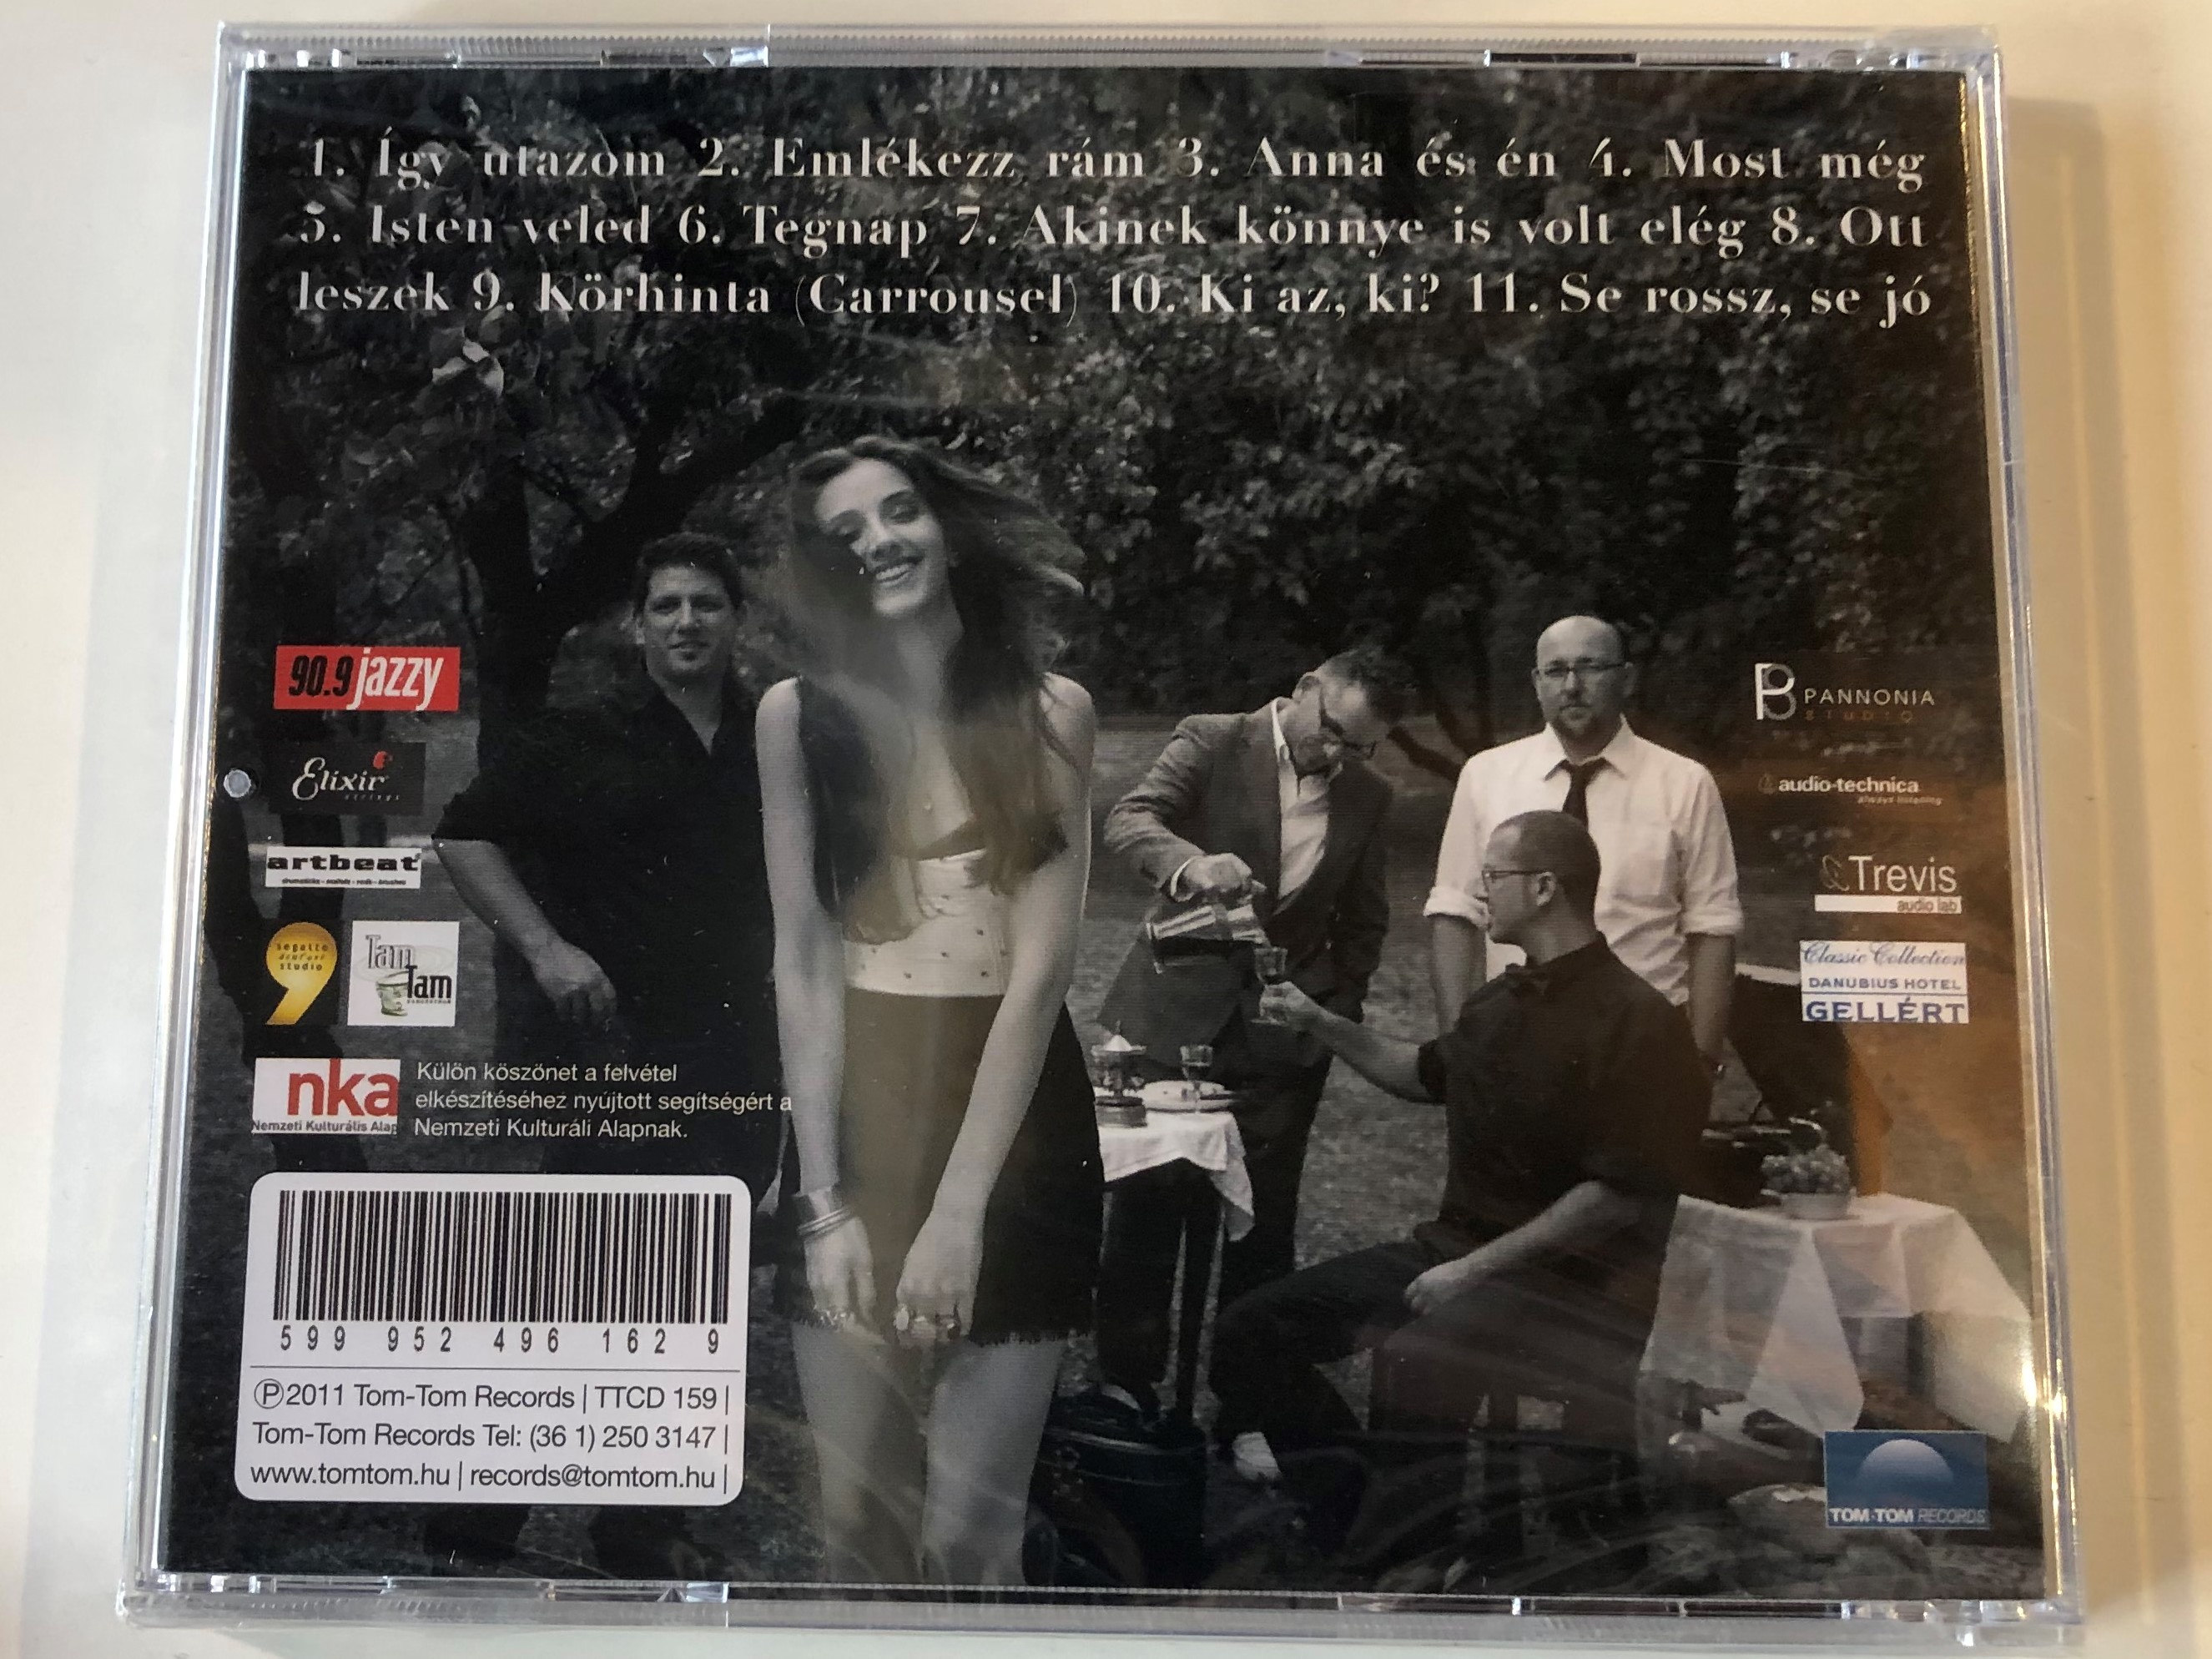 v-czi-eszter-quartet-eszter-kertje-tom-tom-records-audio-cd-2011-ttcd-159-2-.jpg